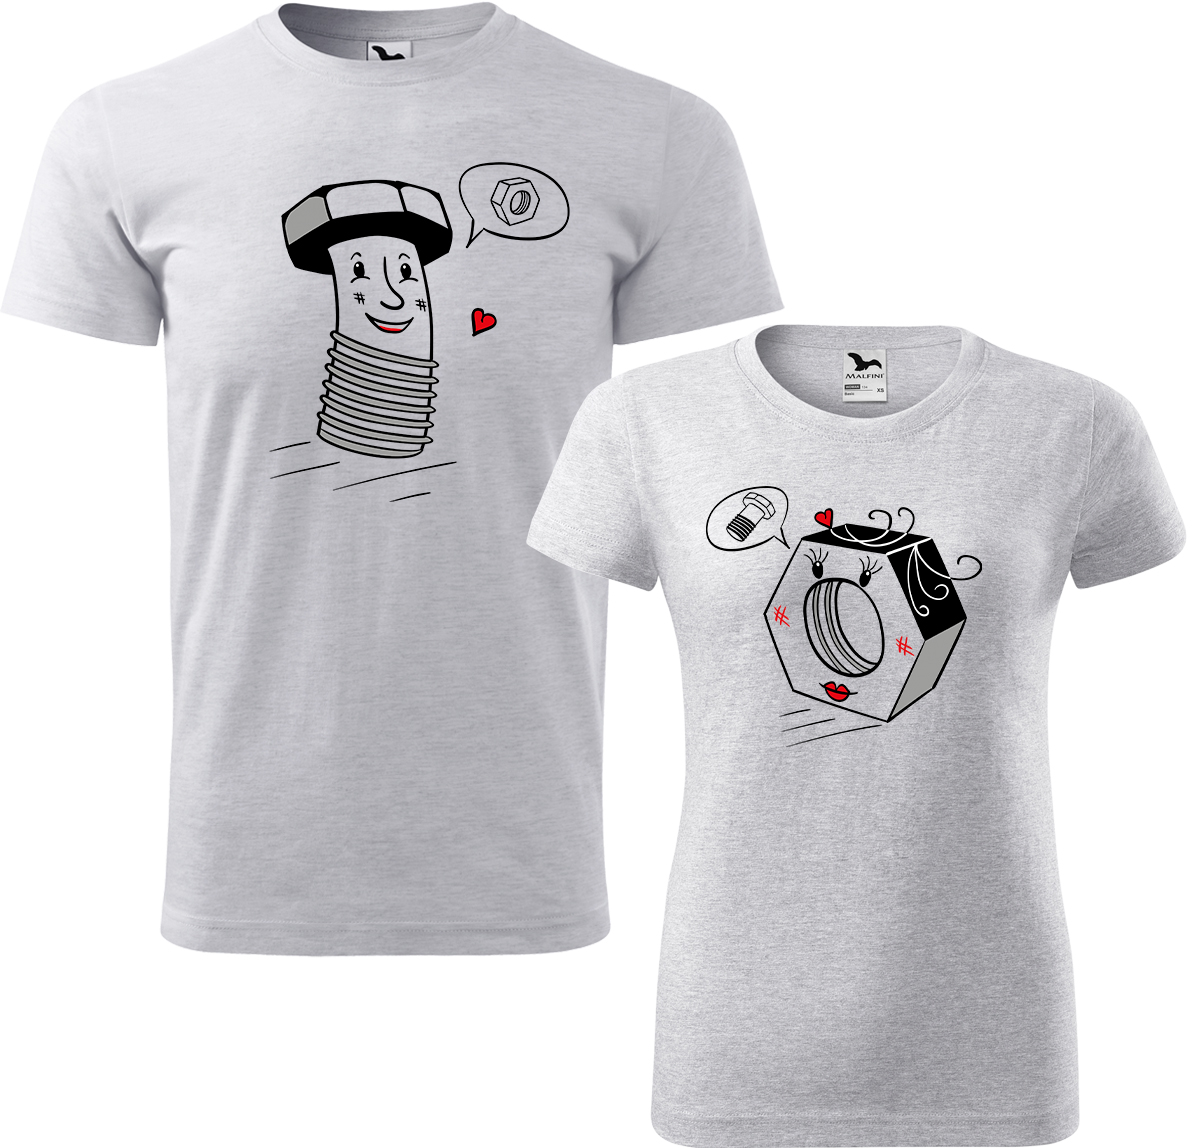 Trička pro páry - Šroubek a matička Barva: Světle šedý melír (03), Velikost dámské tričko: L, Velikost pánské tričko: L